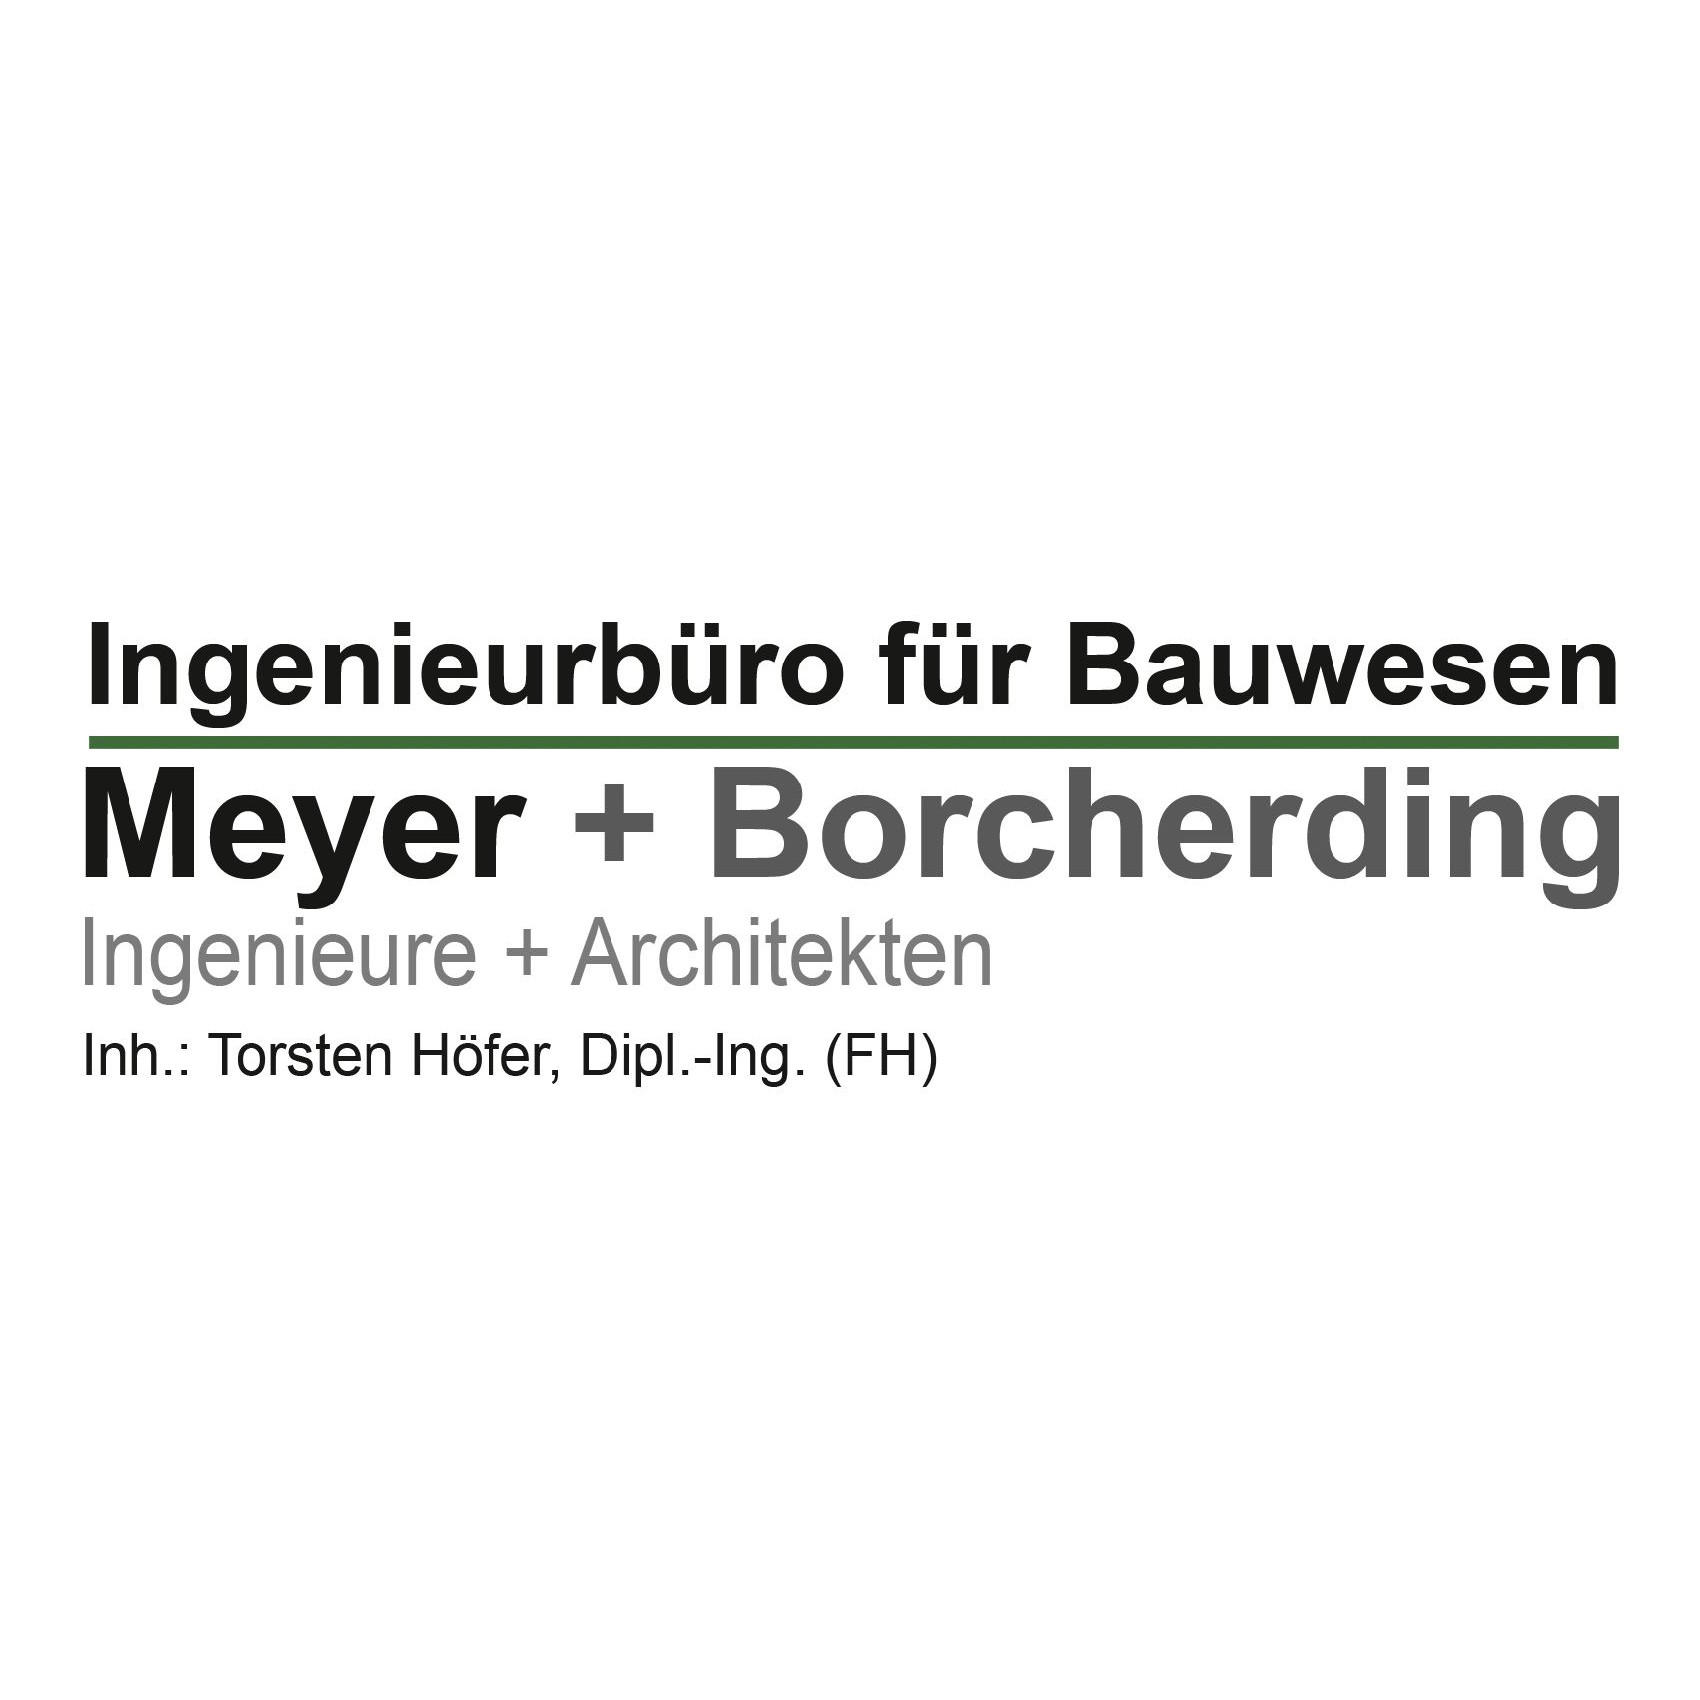 Meyer & Borcherding Inh. Torsten Höfer Dipl.-Ing. (FH) Ingenieurbüro für Bauwesen Logo